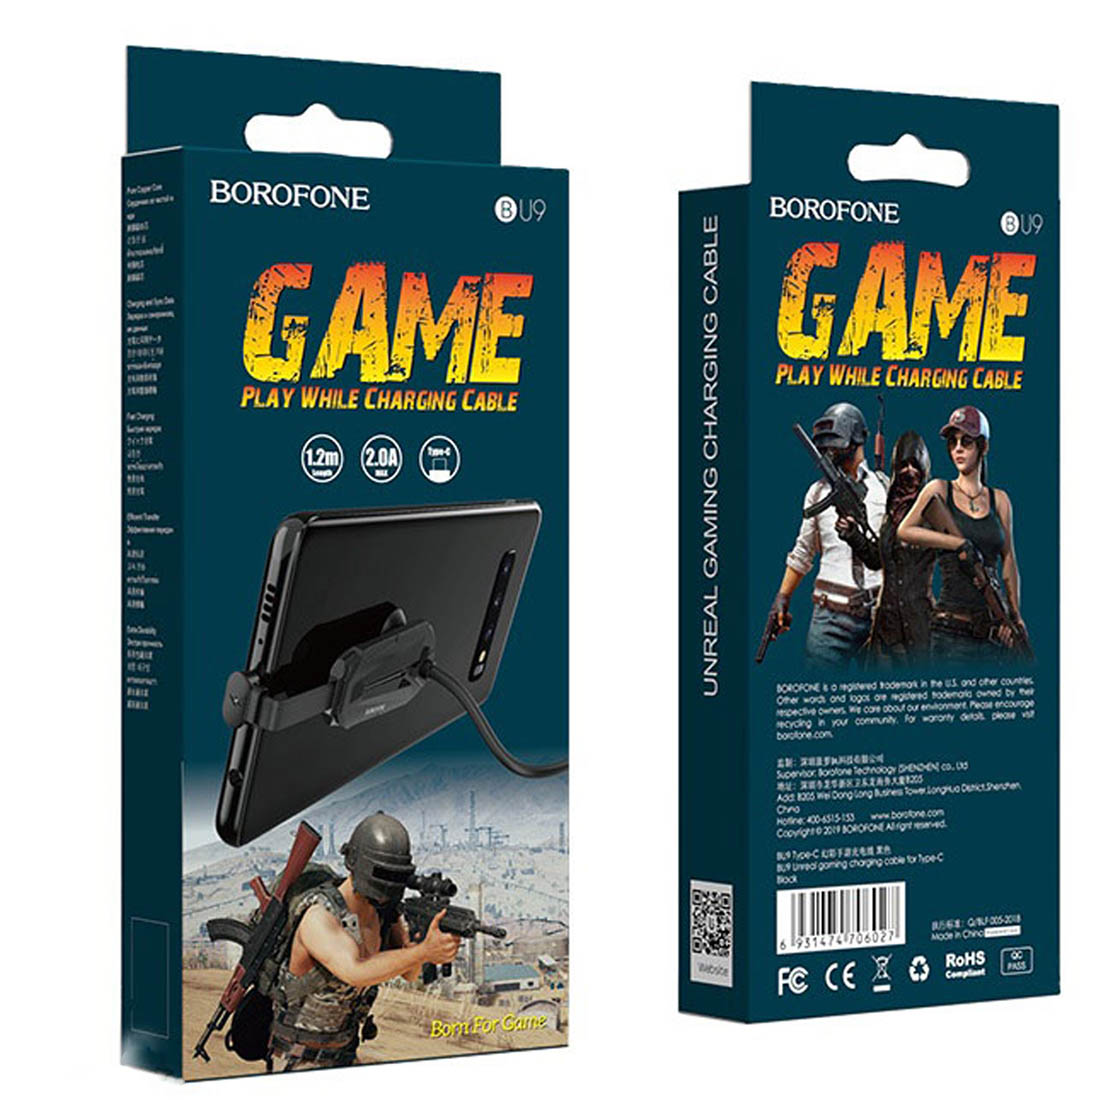 Кабель USB Type C BOROFONE BU9 Unreal gaming, 2A, длина 1.2 метра, силиконовая круглая оболочка, спец-крепление на корпус, цвет черный.